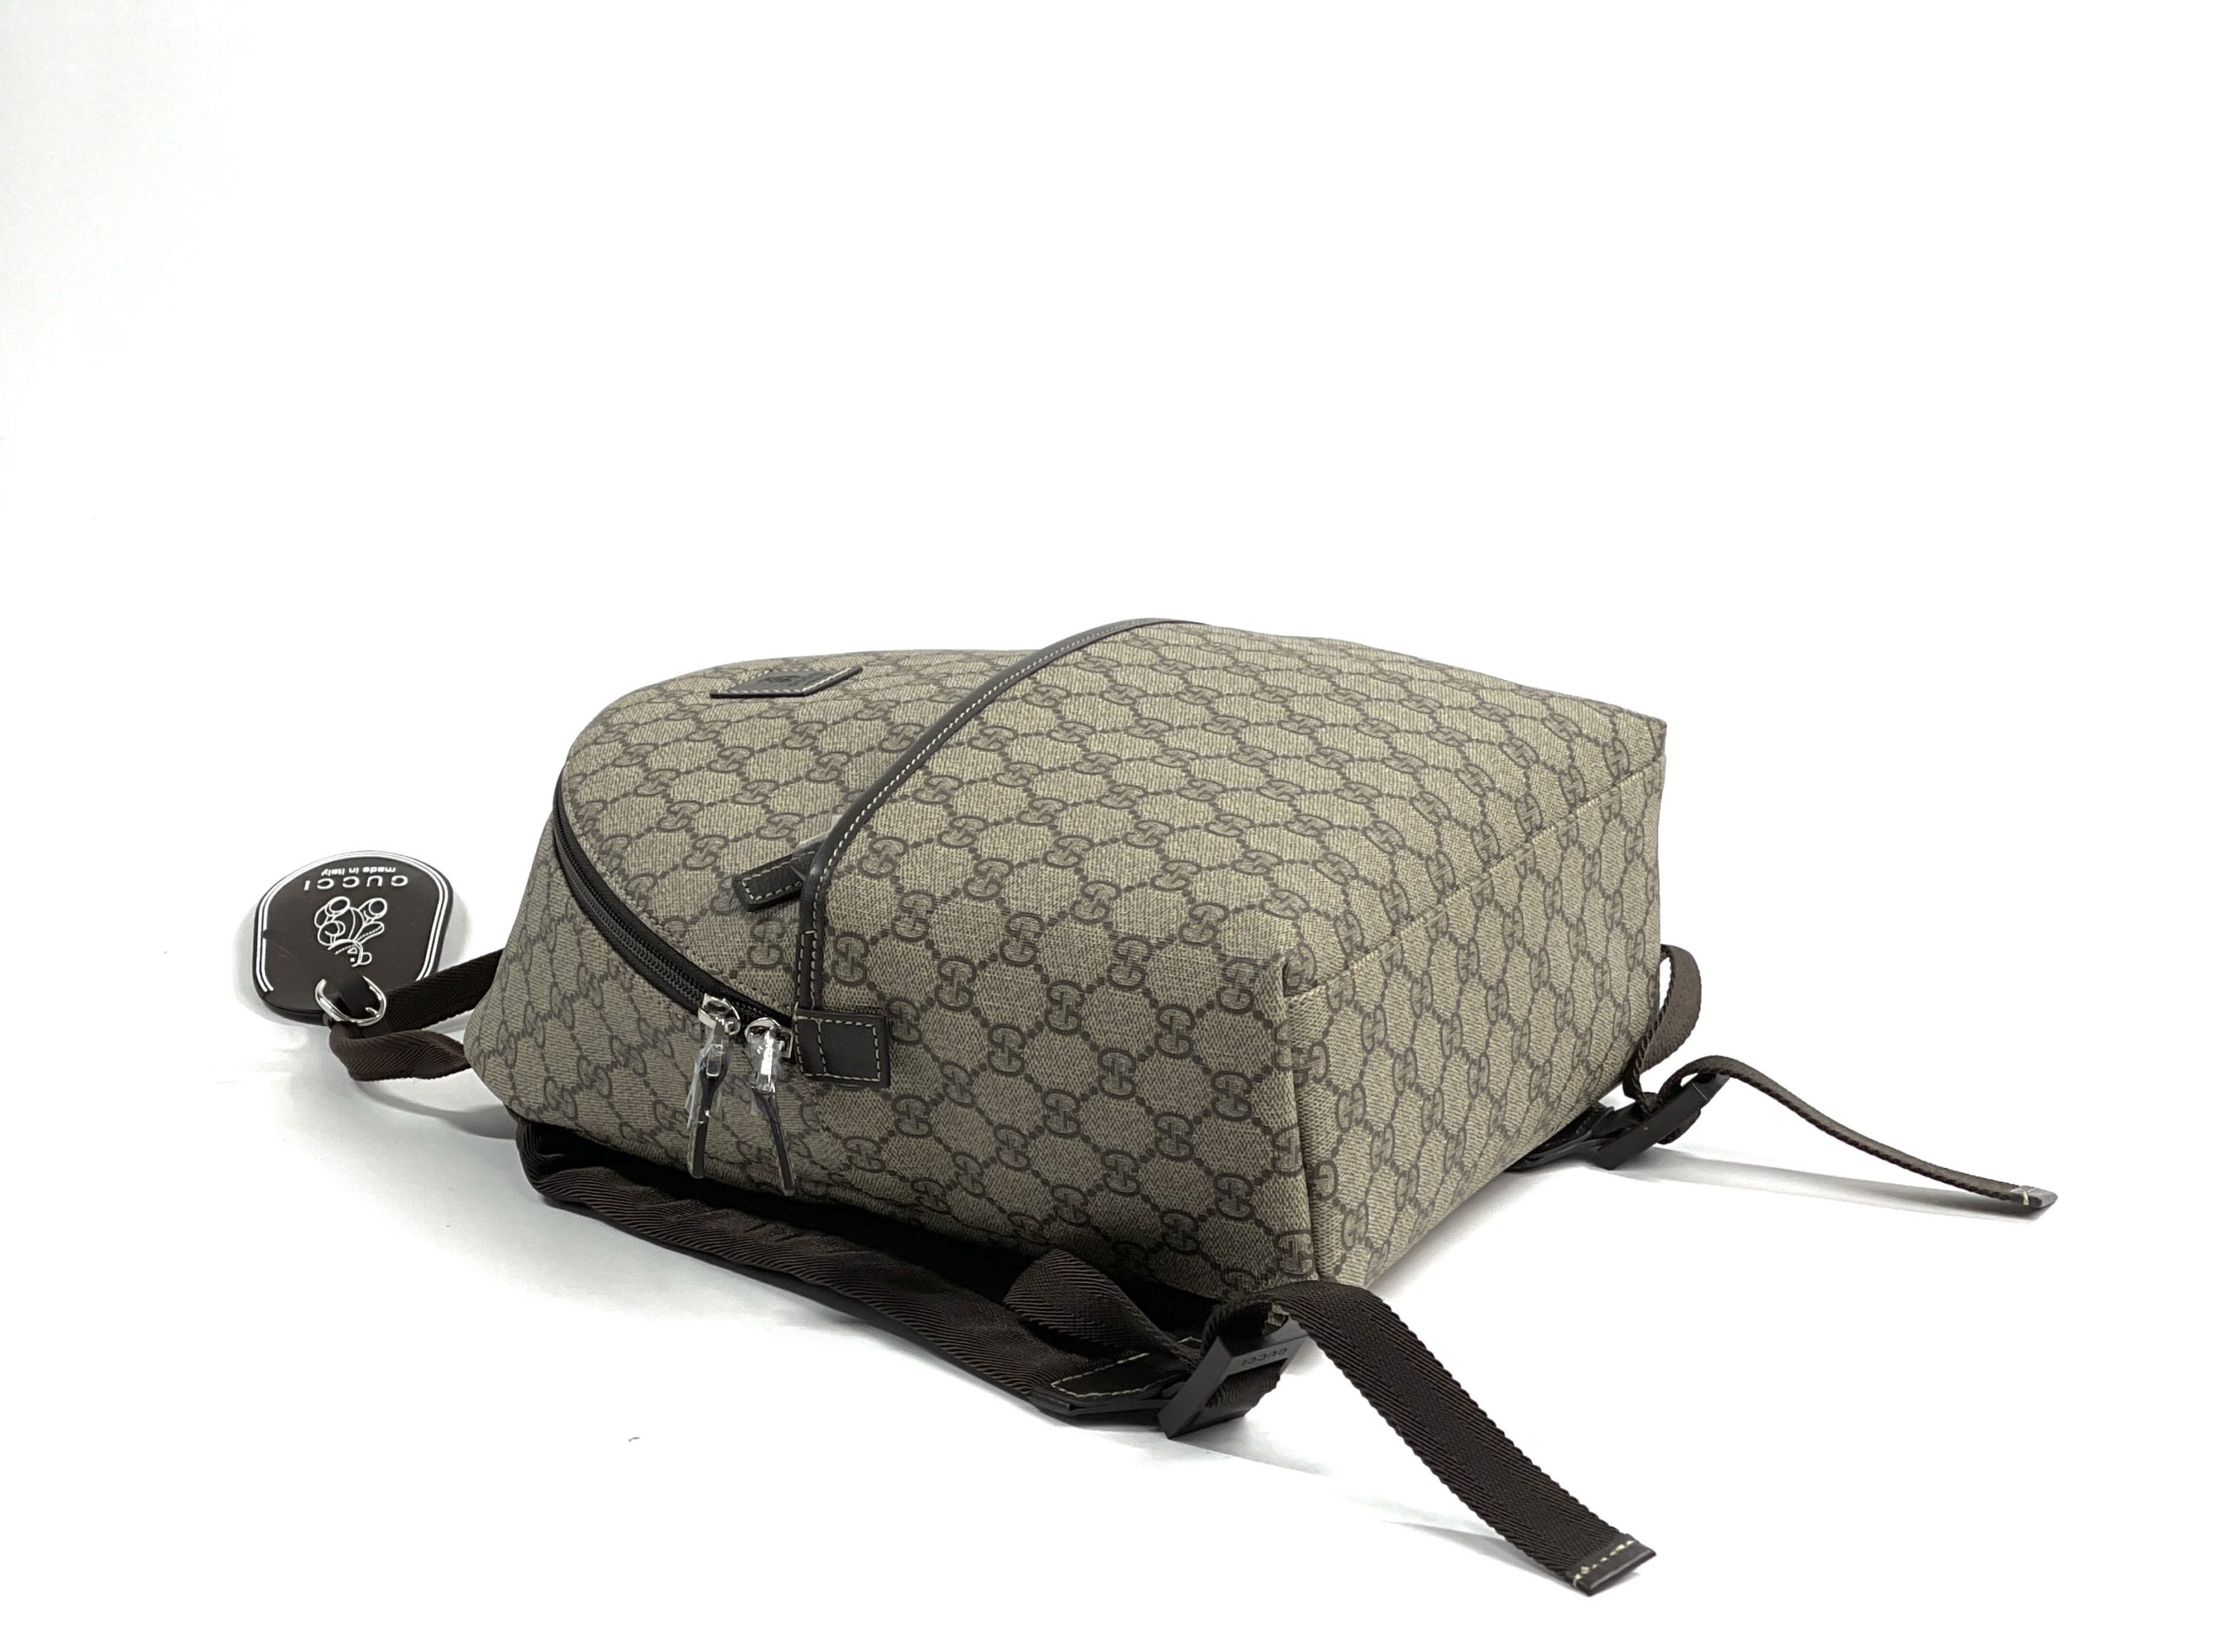 Gucci Mini Backpack 